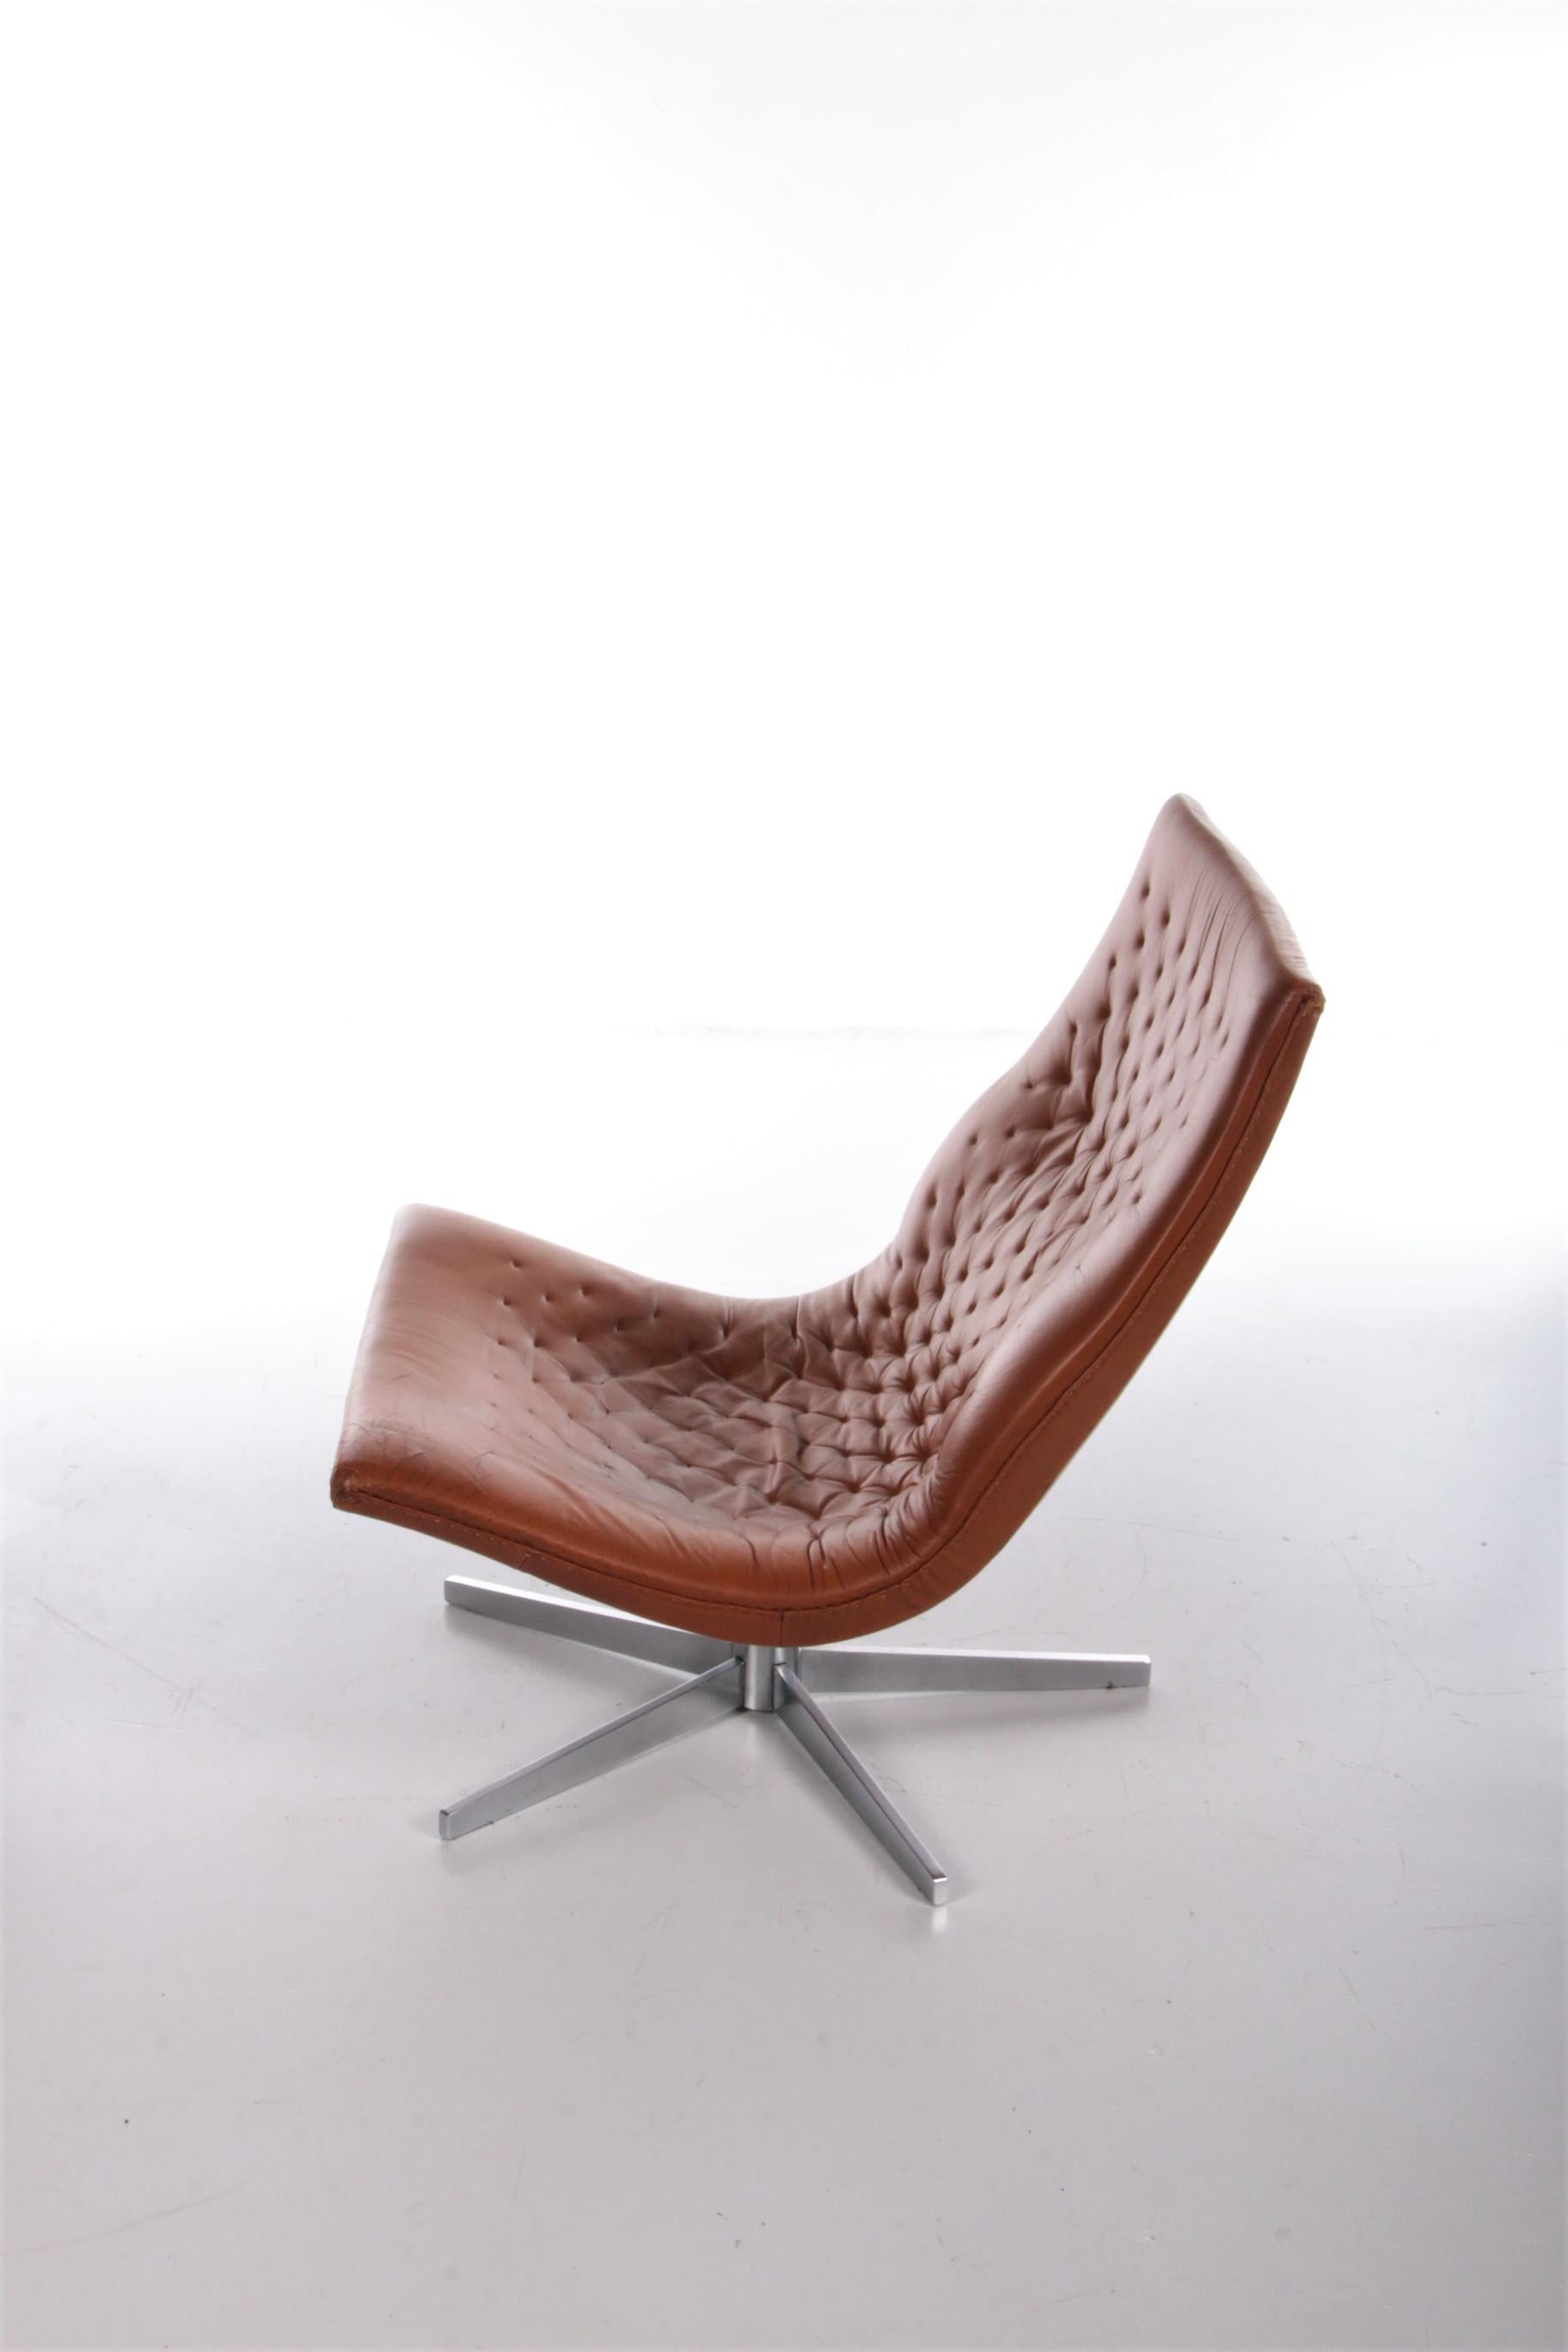 Mid-Century Modern Lounge Chair De Sede Model DS-51 Cognac Color Leather Switzerland For Sale